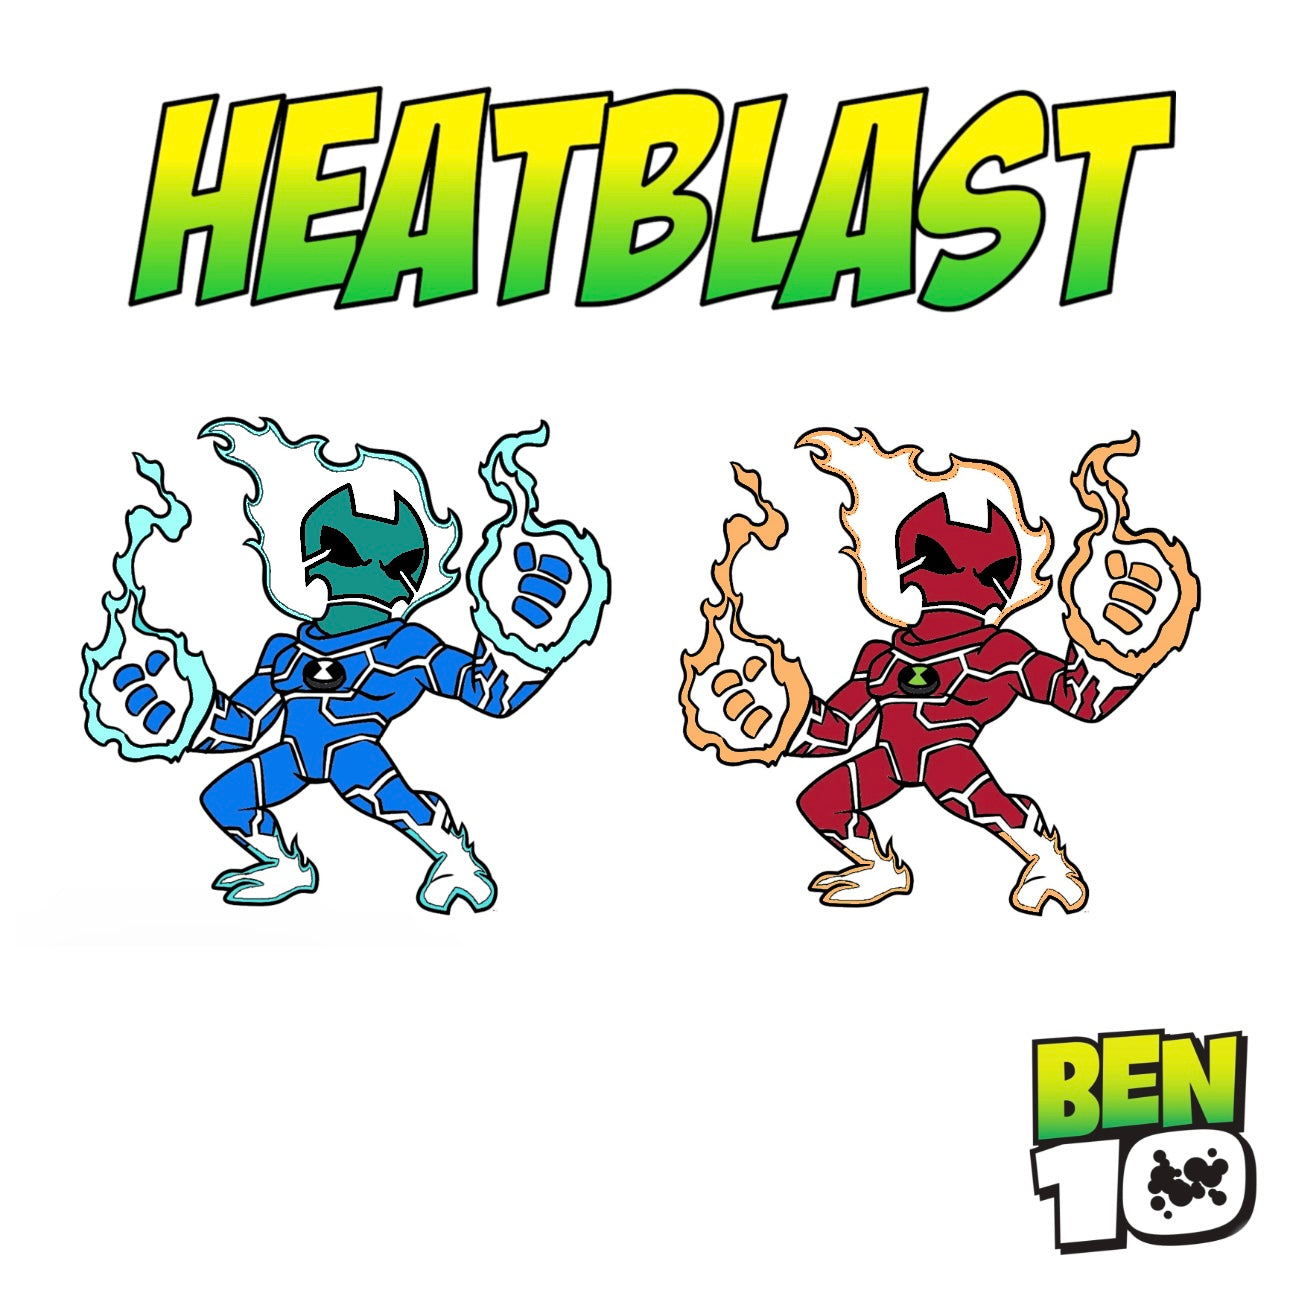 "Heatblast bundle (gitd)